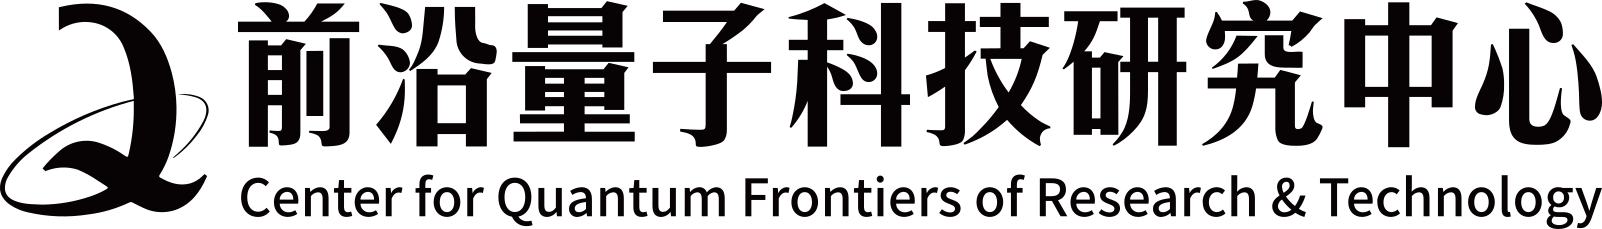 QFORT Logo